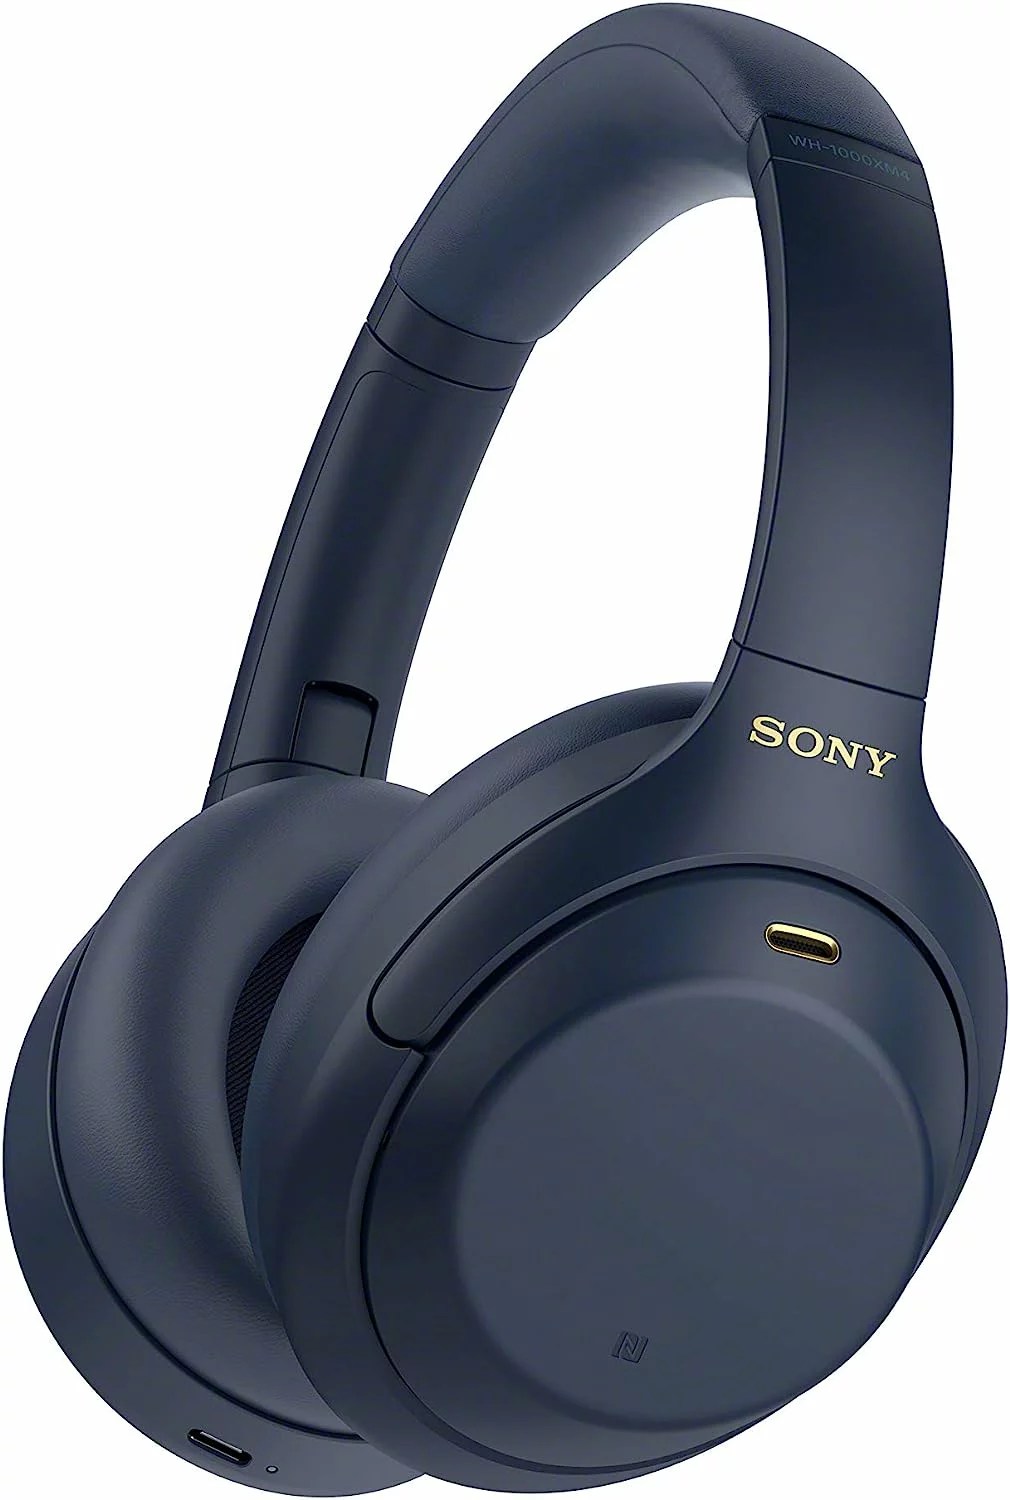 sony wireless premium noise canceling overhead headphones